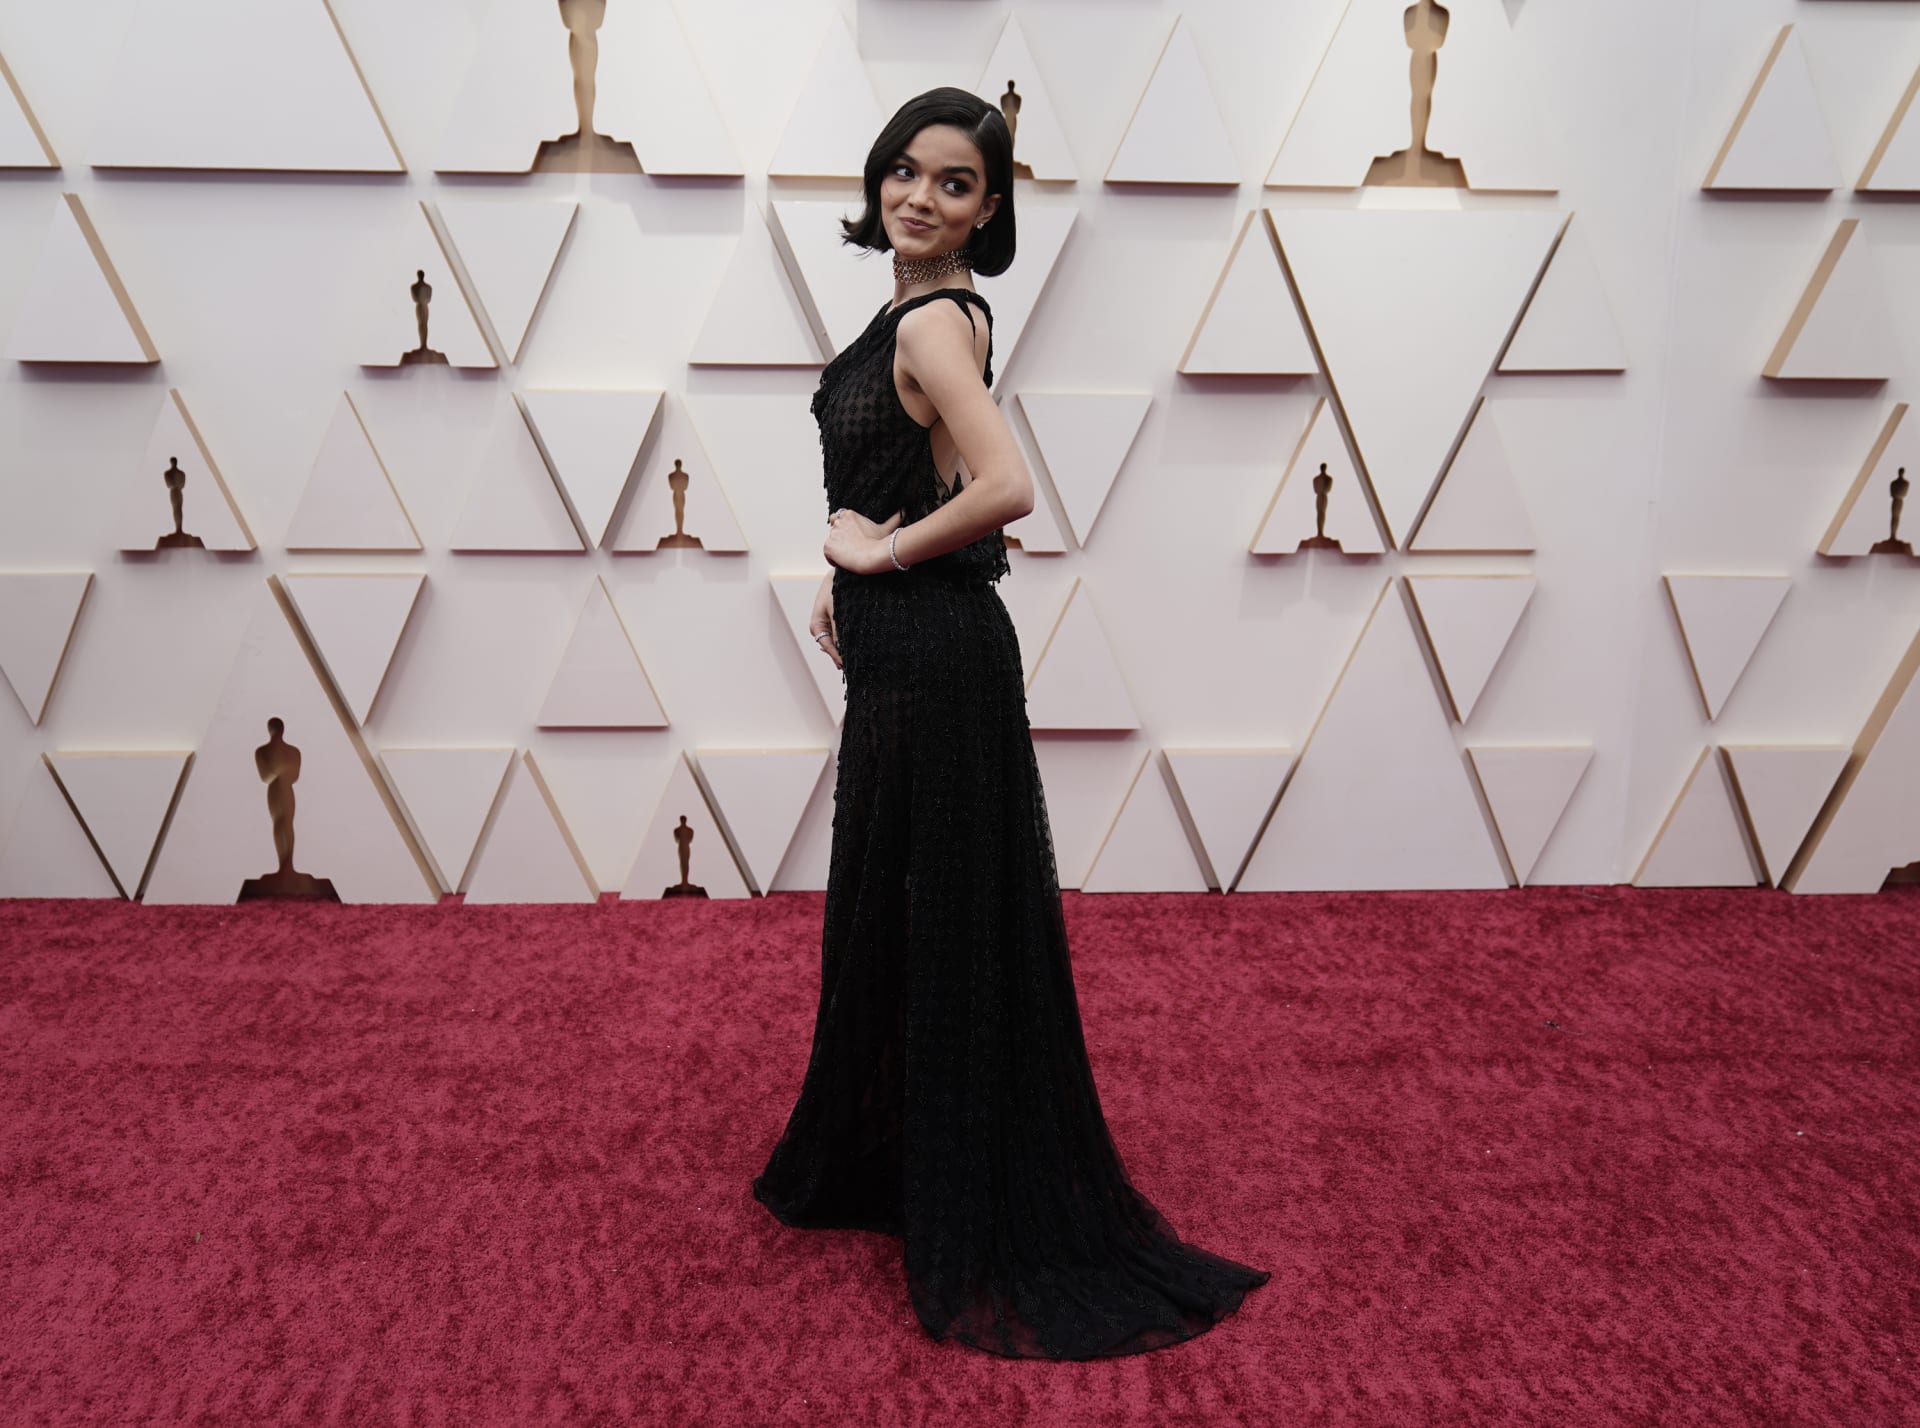 Herečka a youtuberka Rachel Zeglerová na předávání filmových cen Oscar na sebe oblékla černé šaty s flitrovými detaily od značky Dior. Jako doplňěk zvolila zlatý náhrdelník.  